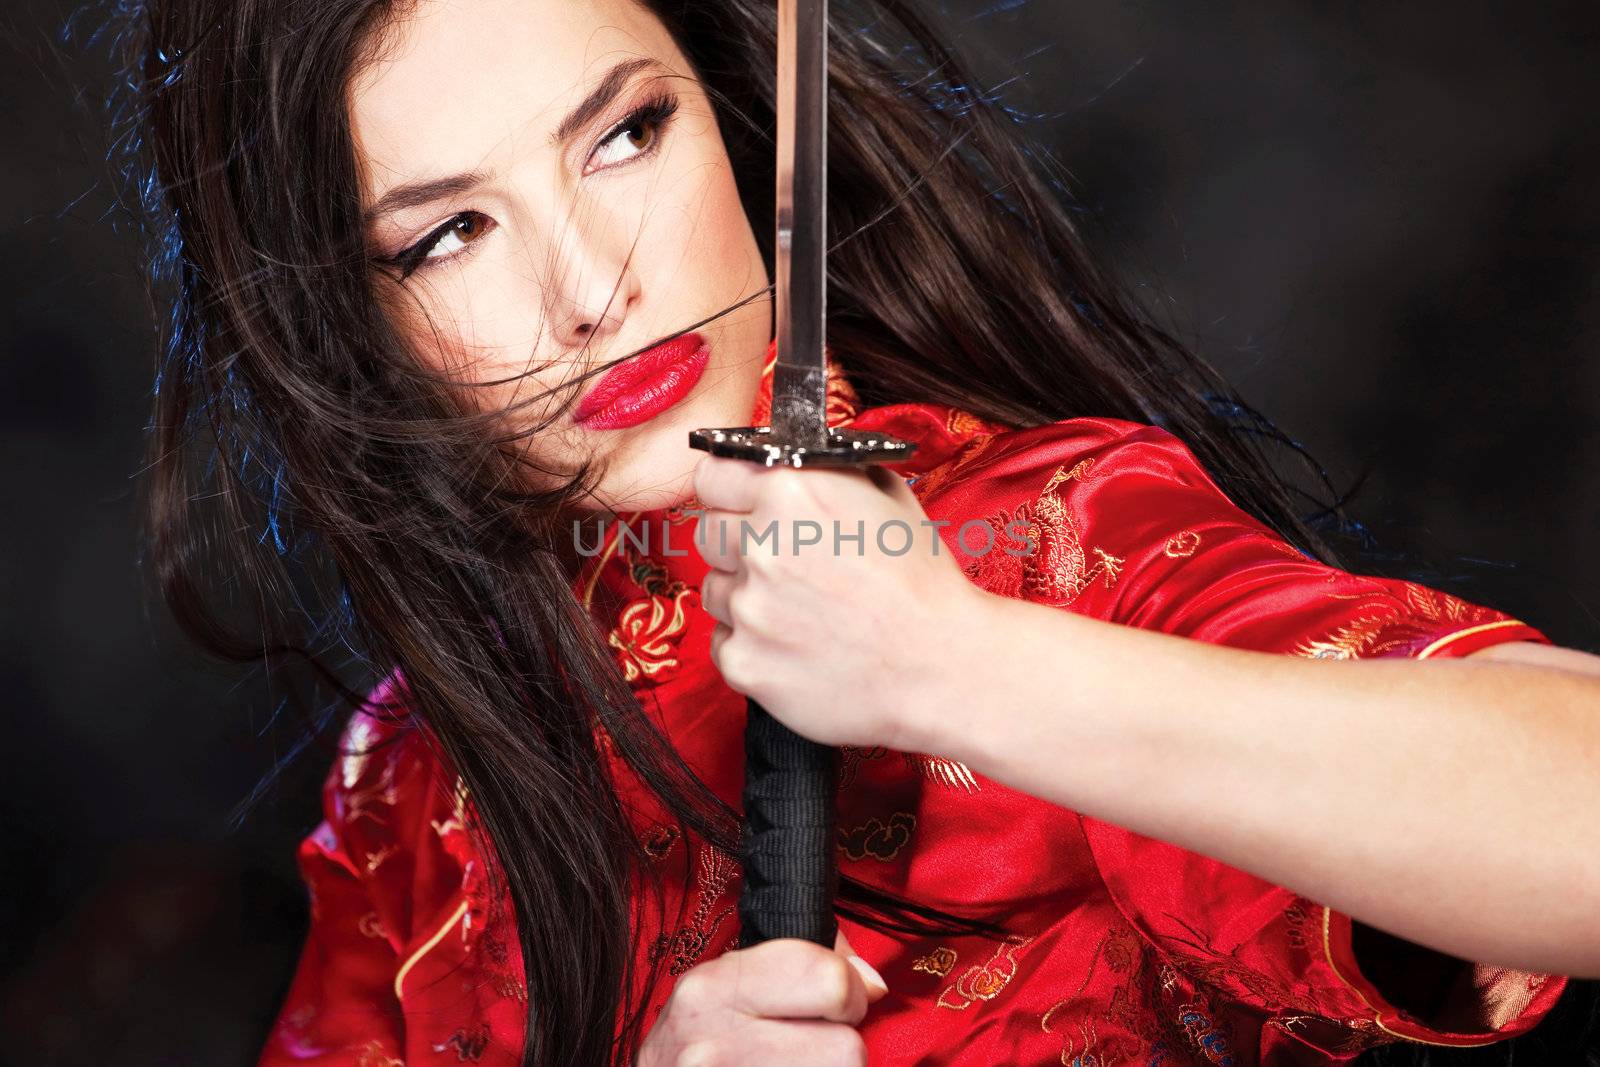 woman and katana/sword by imarin